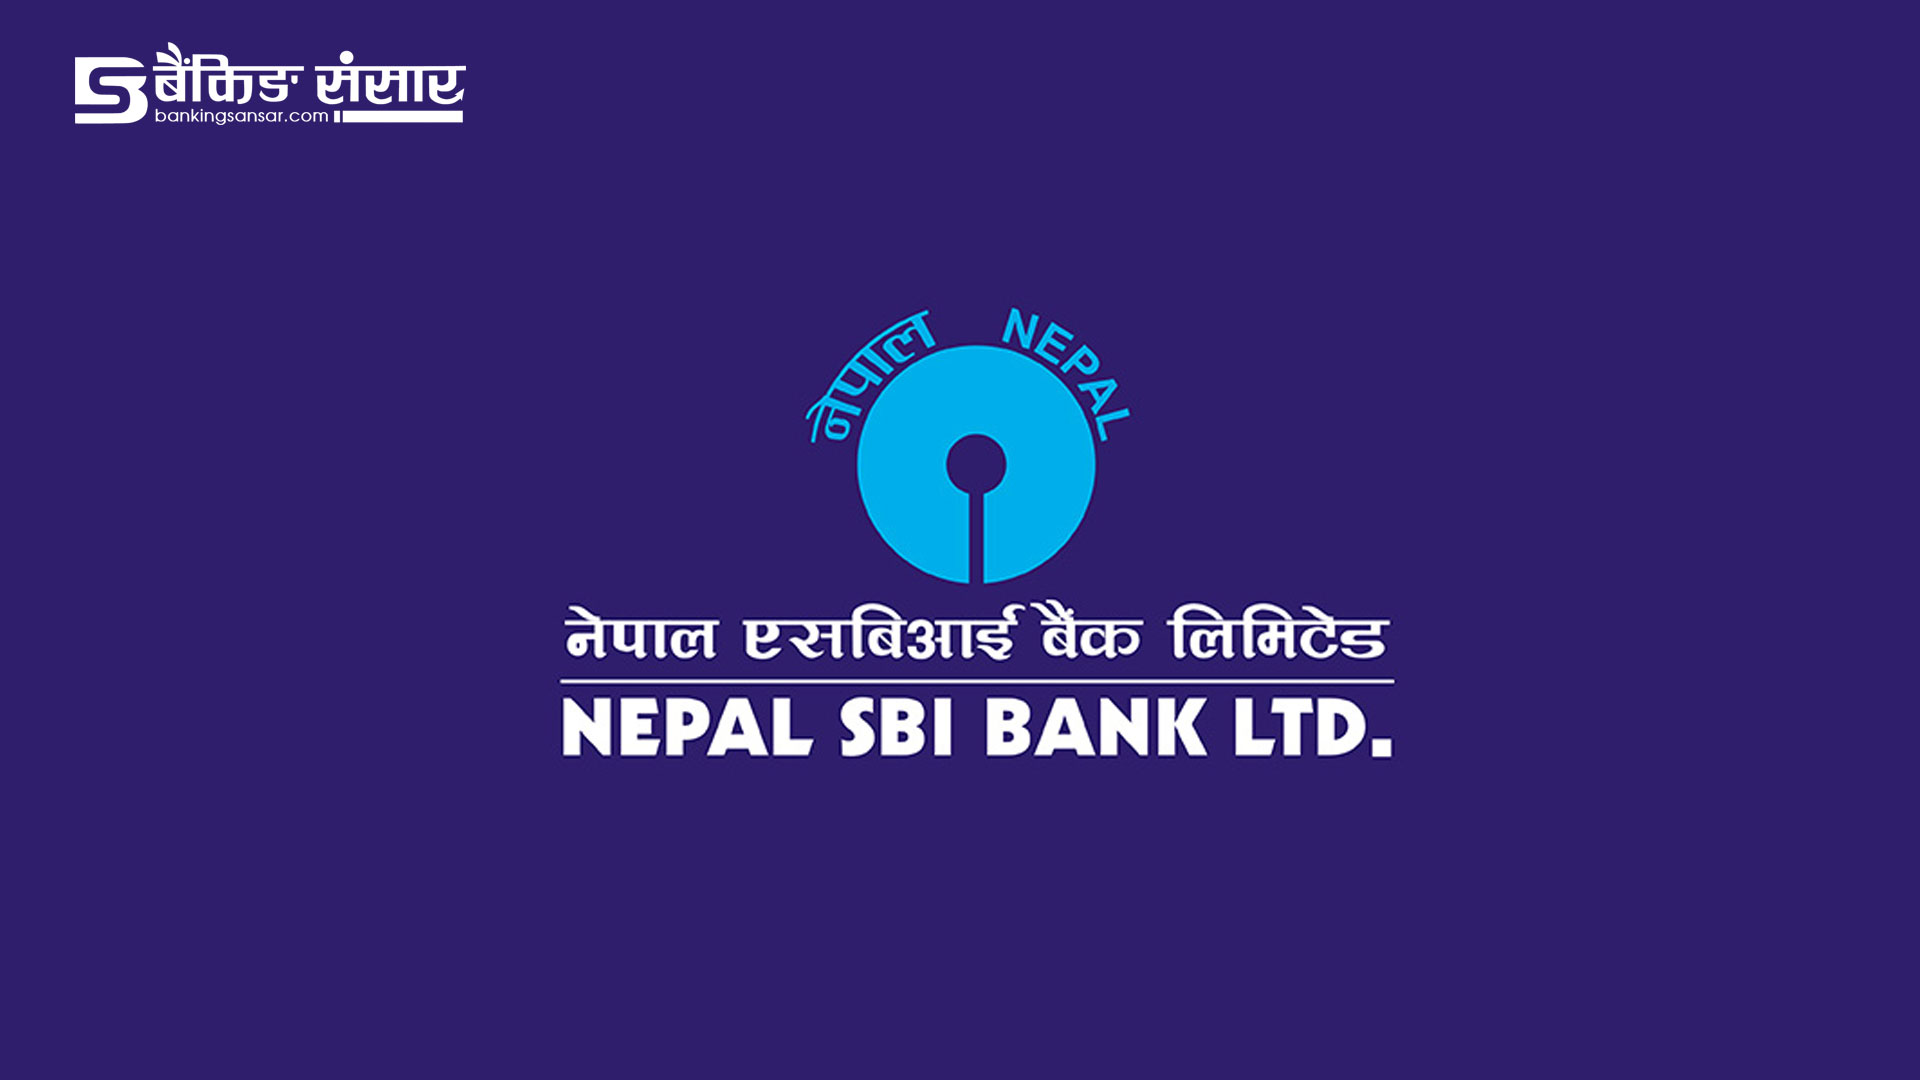 गाडी किन्न सबैभन्दा सस्तो ब्याजमा ऋण दिँदै नेपाल एसबिआई बैंक